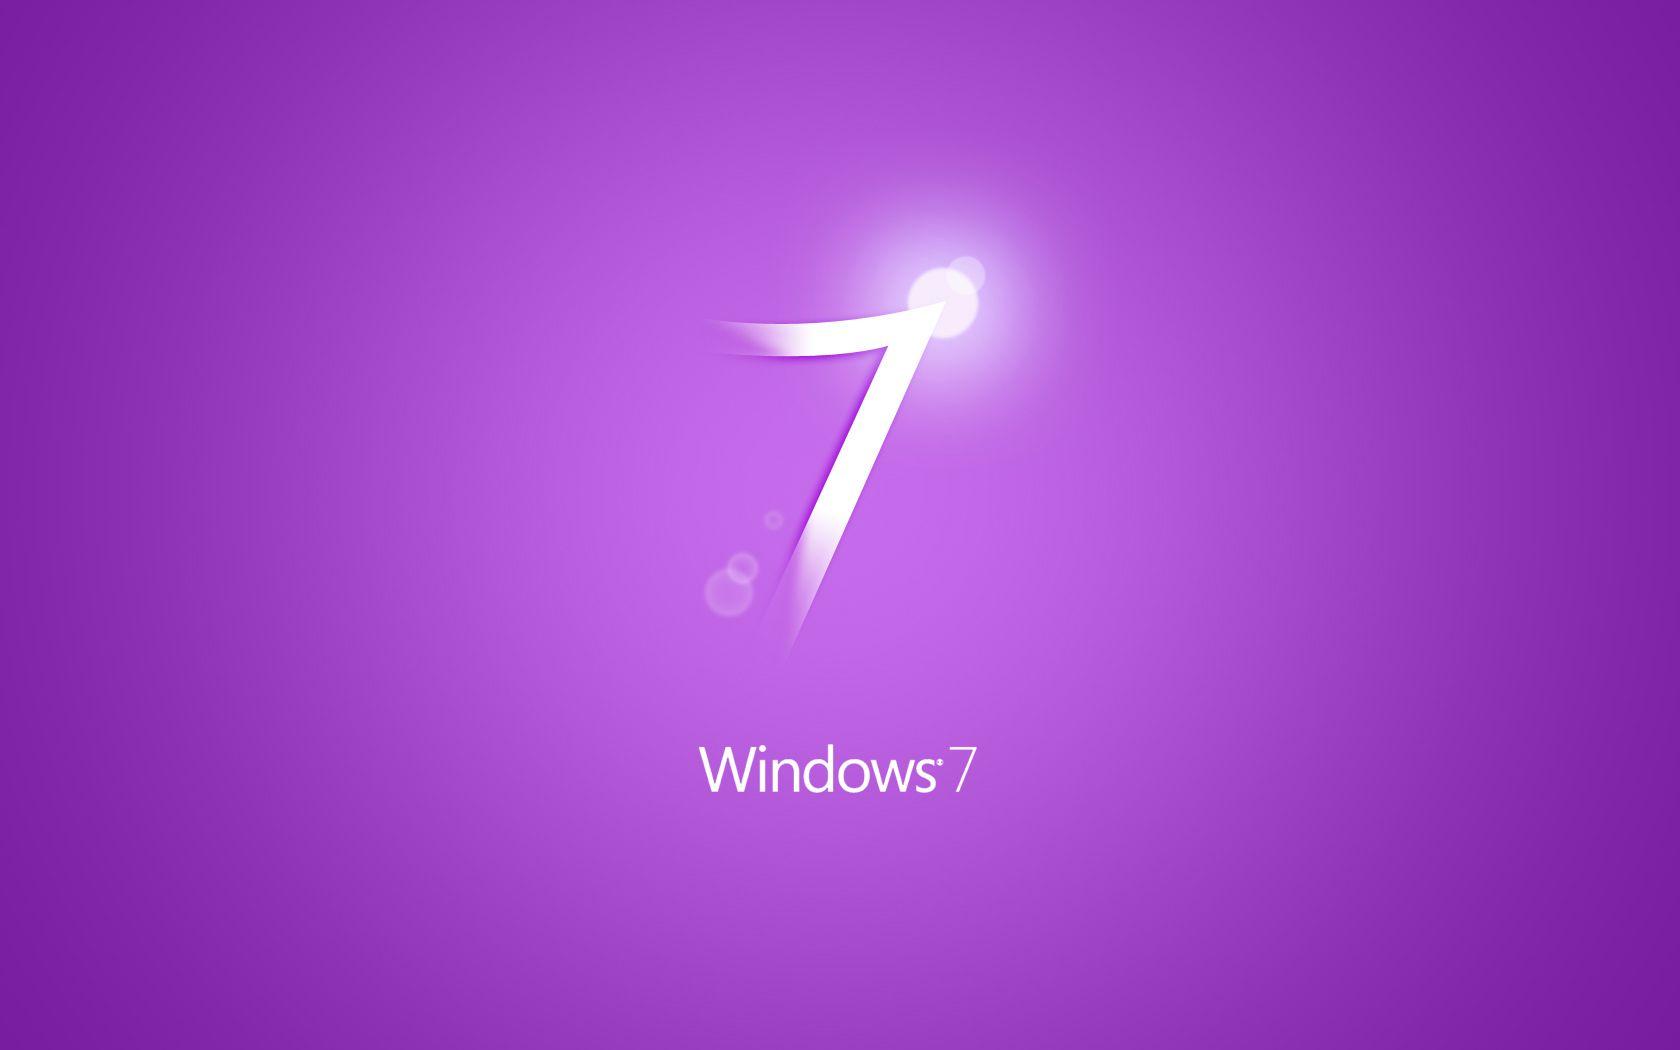 Windows 7 Purple Wallpaper